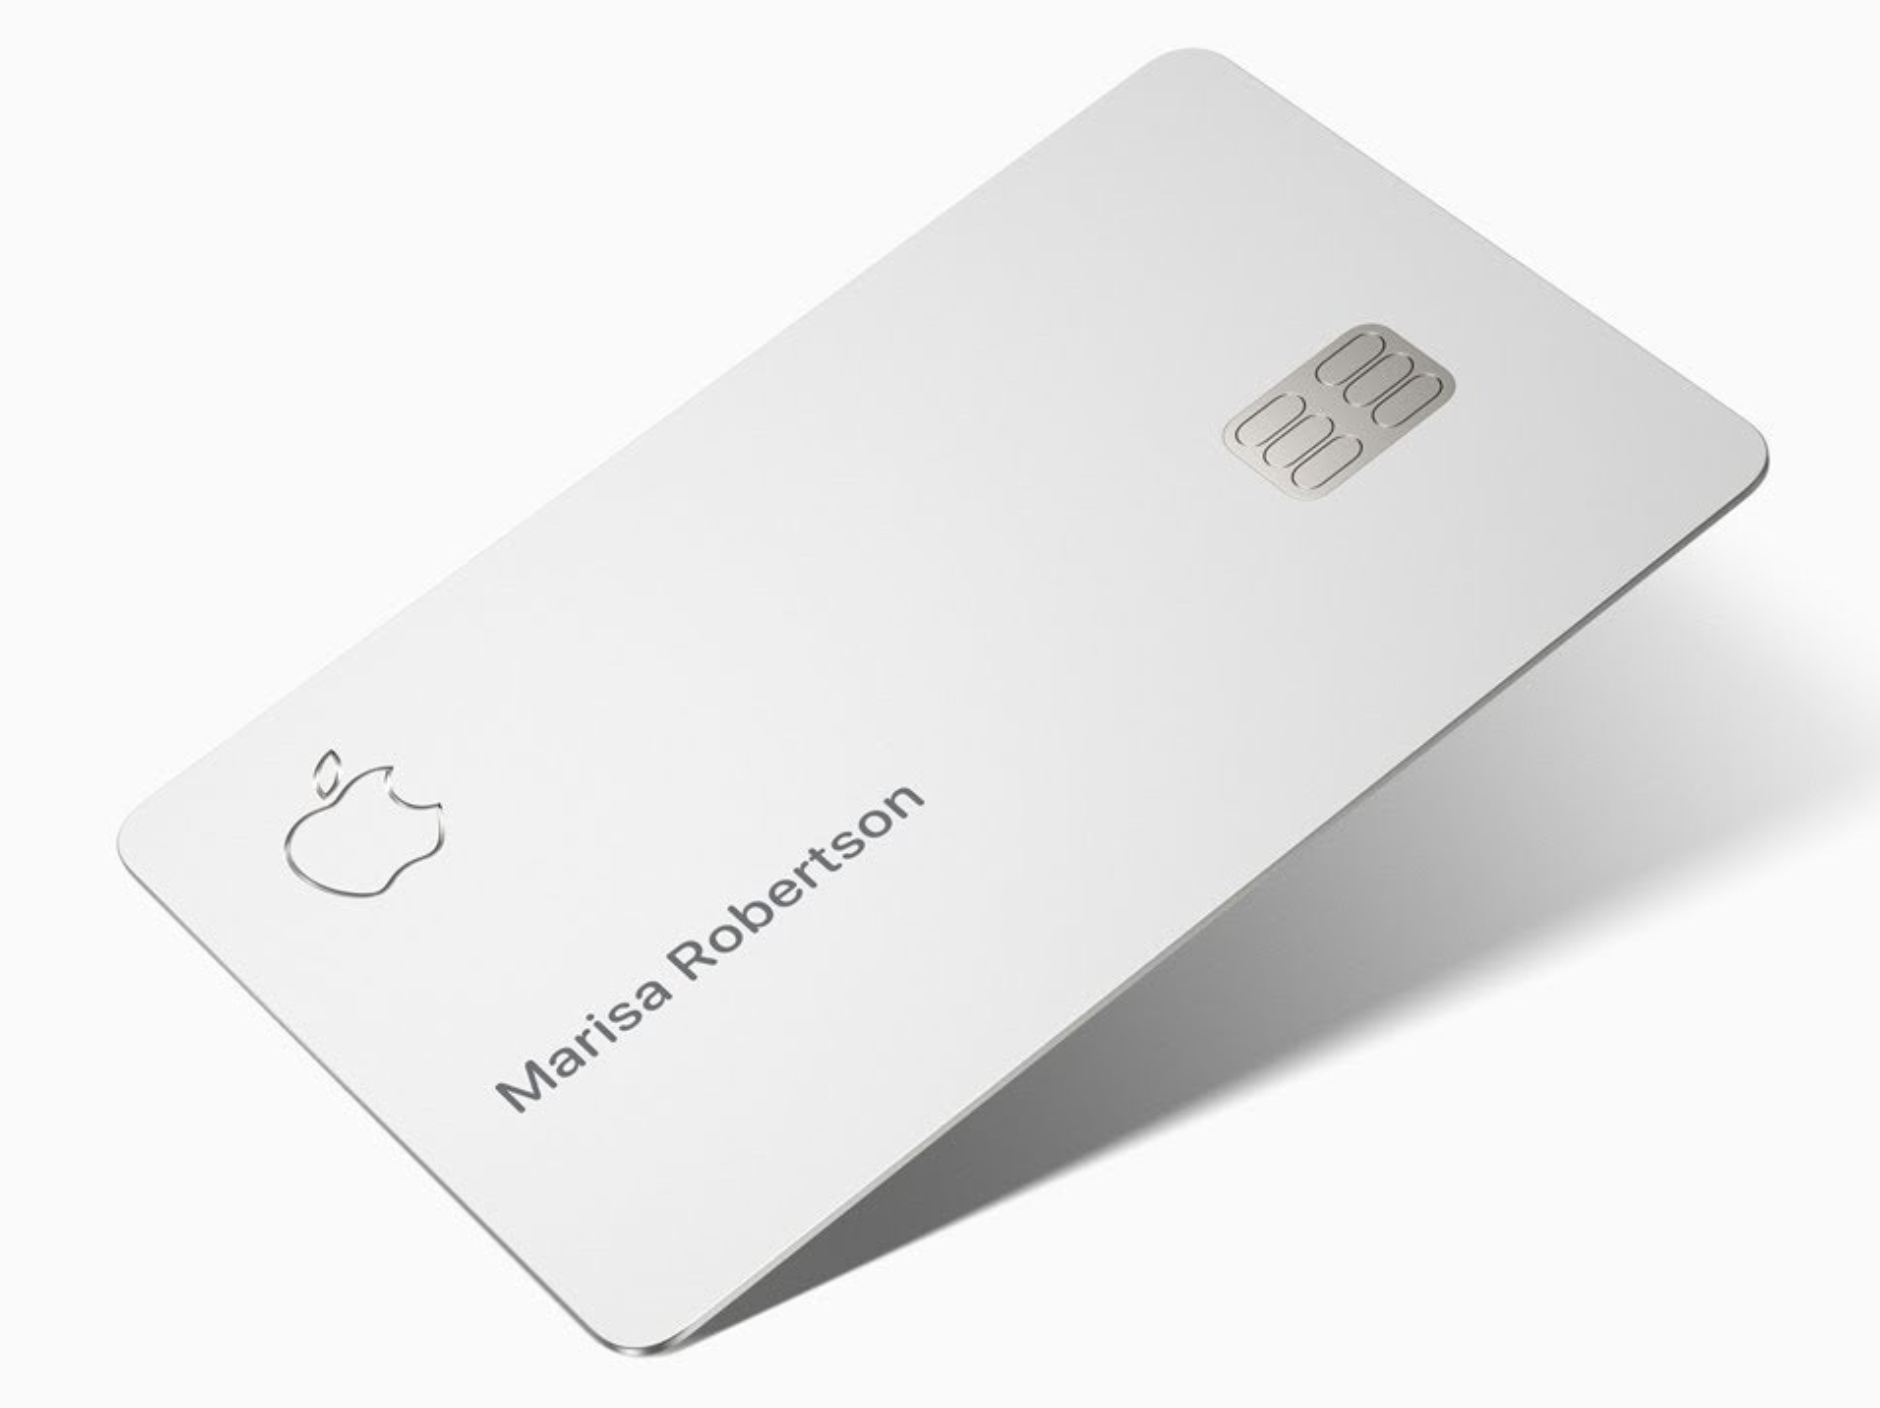 معدل الموافقة ل Apple بطاقة يسجل رقما قياسيا جديدا